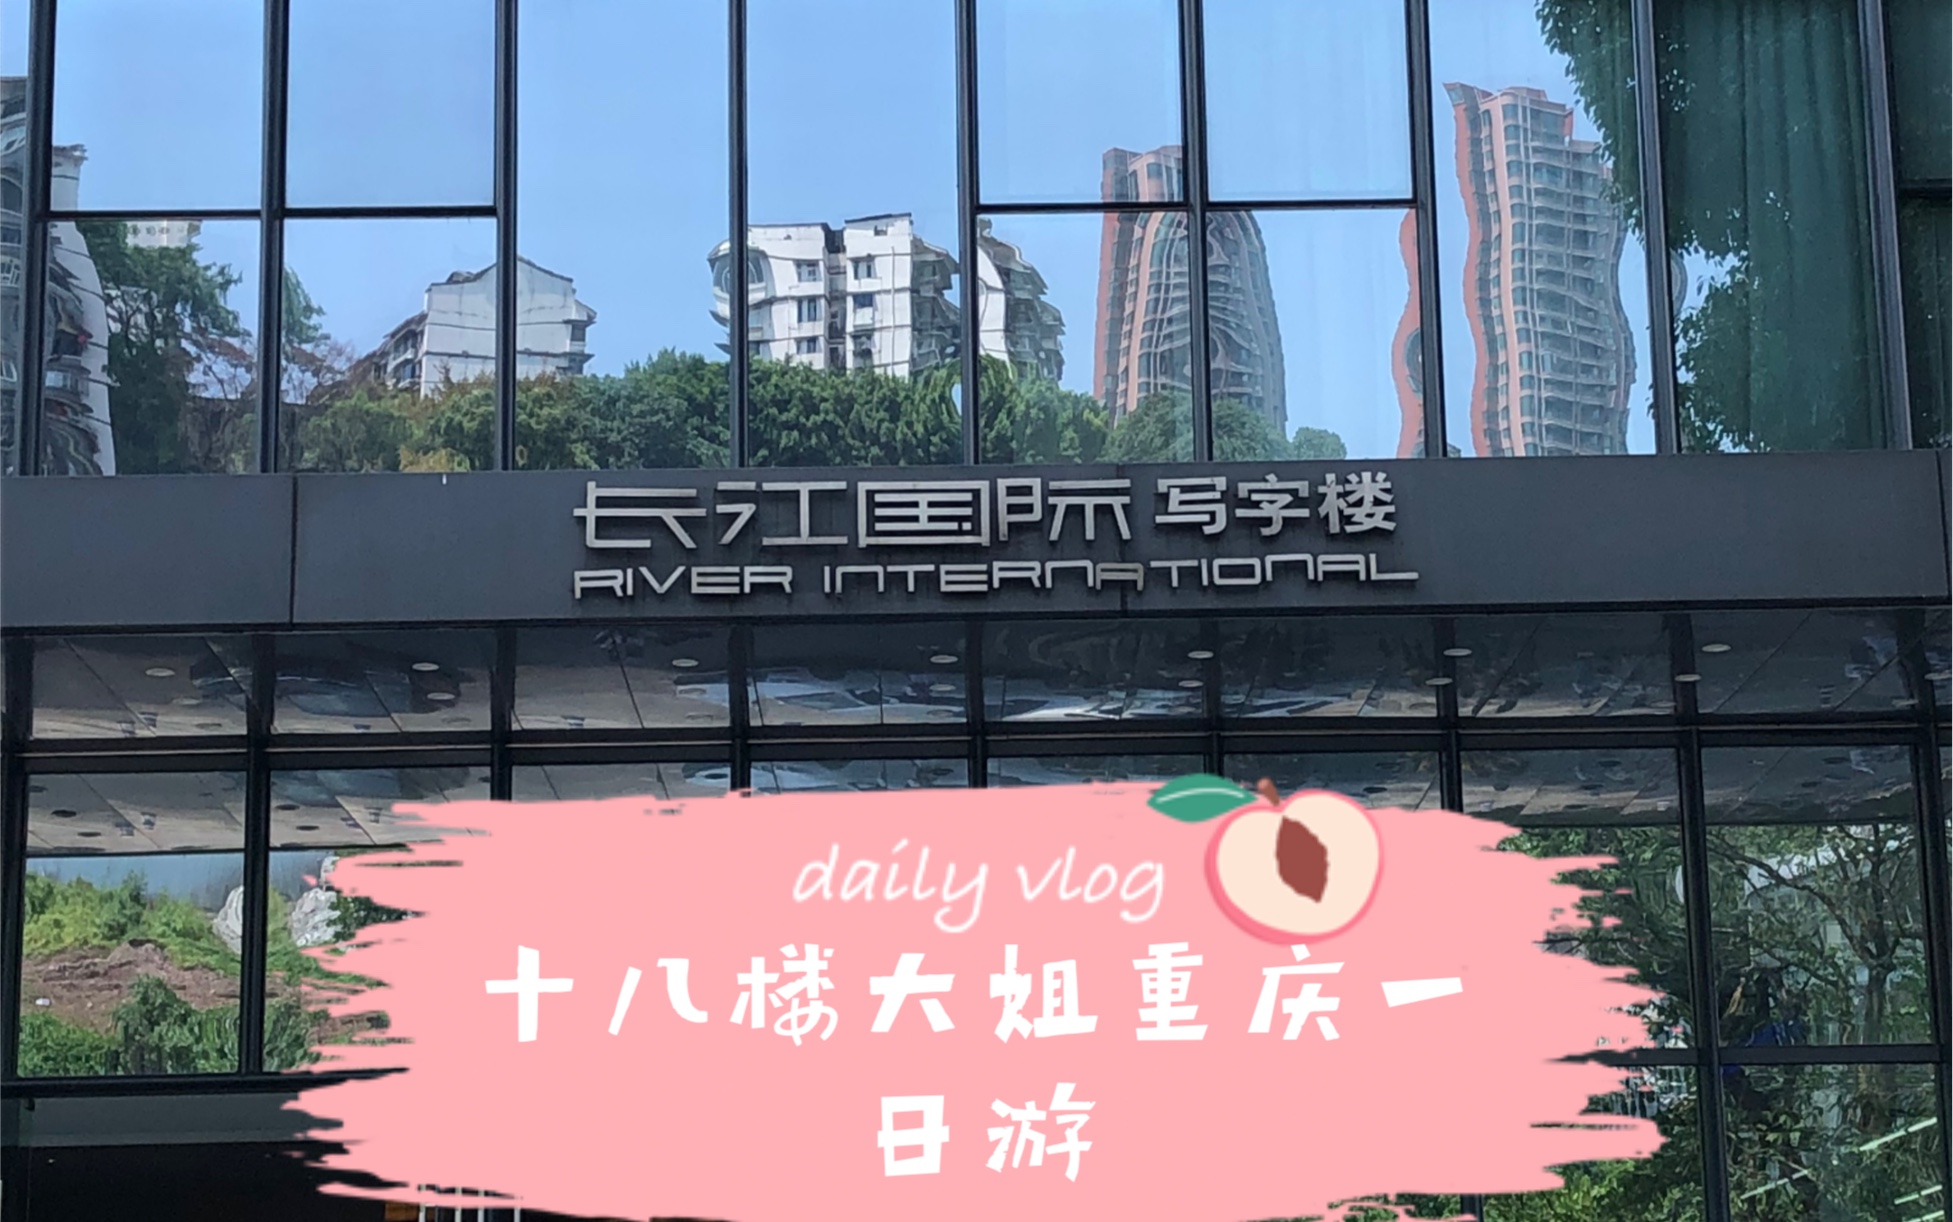 重庆伪vlog十八楼一日游长江国际十八楼山城的夏天永远有少年